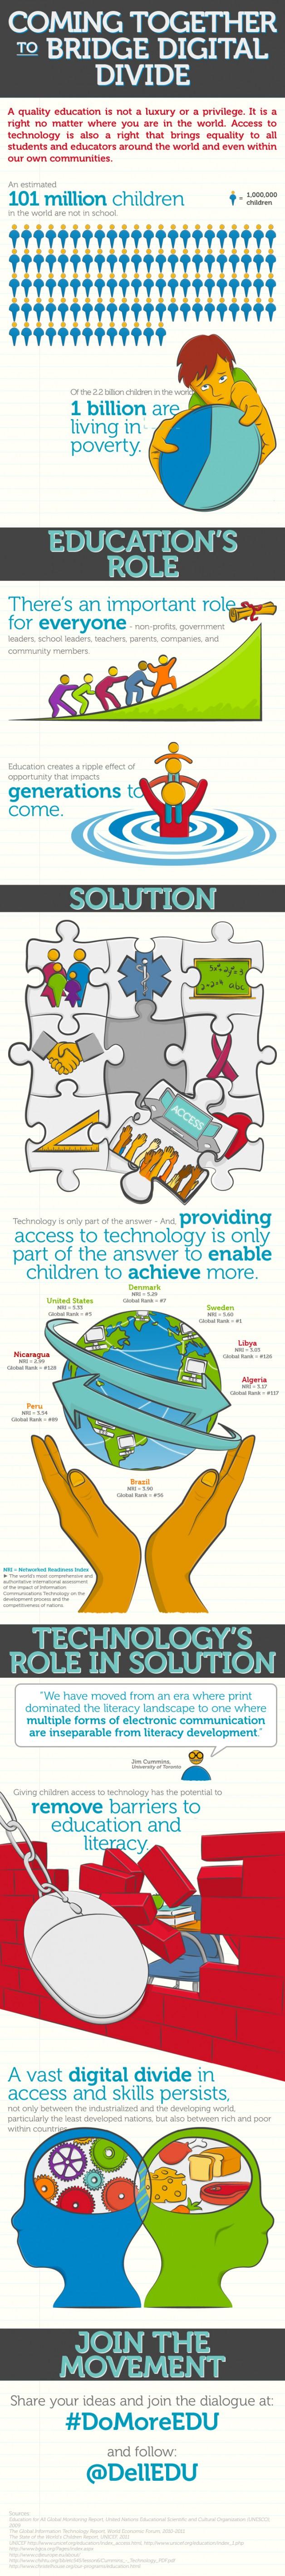 Infografía: Tendiendo un puente a la brecha digital en educación